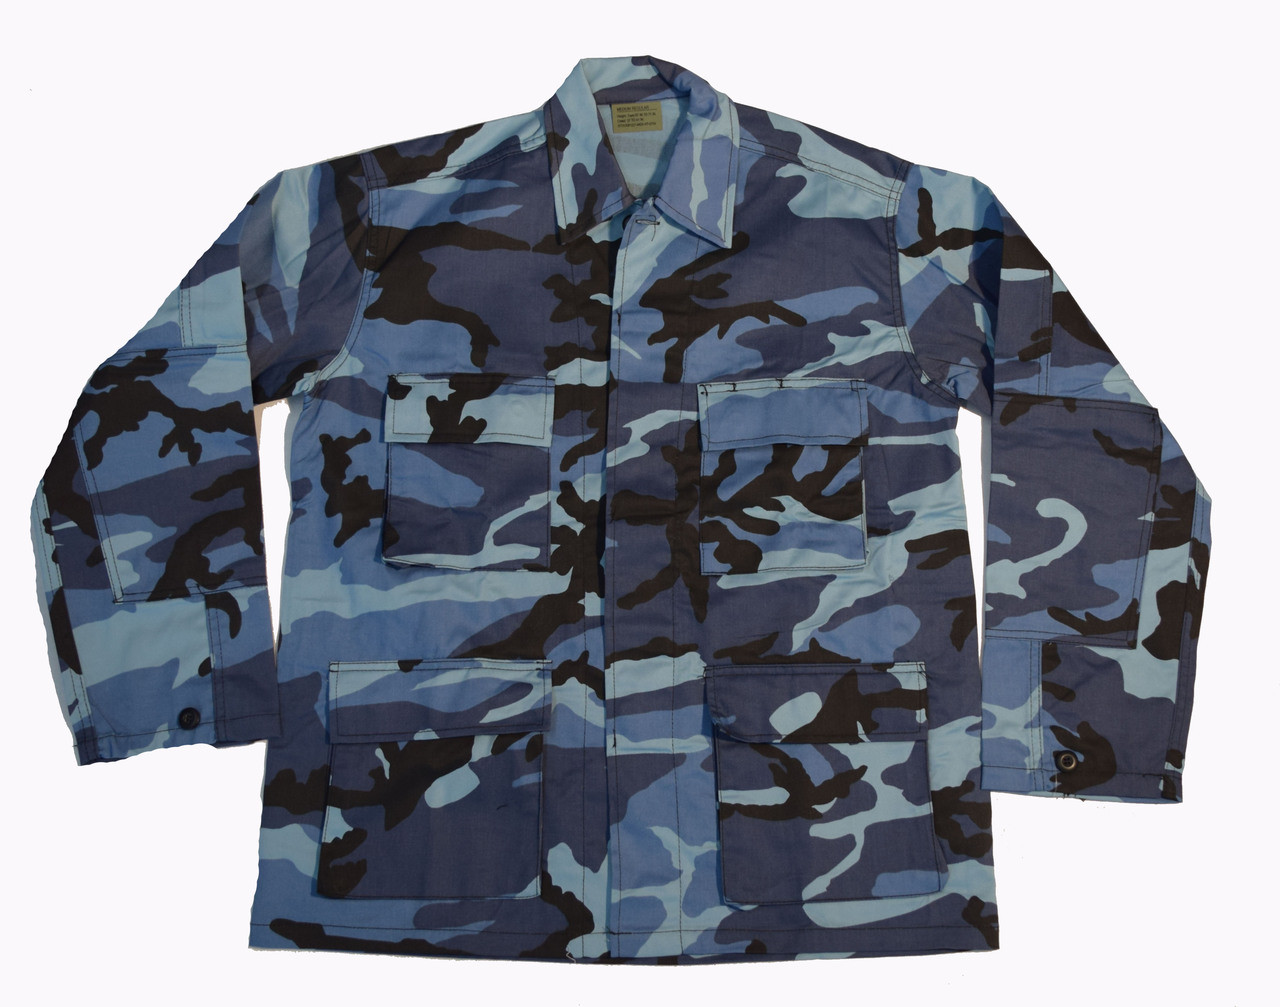 Sky Blue BDU Camo Military Shirt Jacket